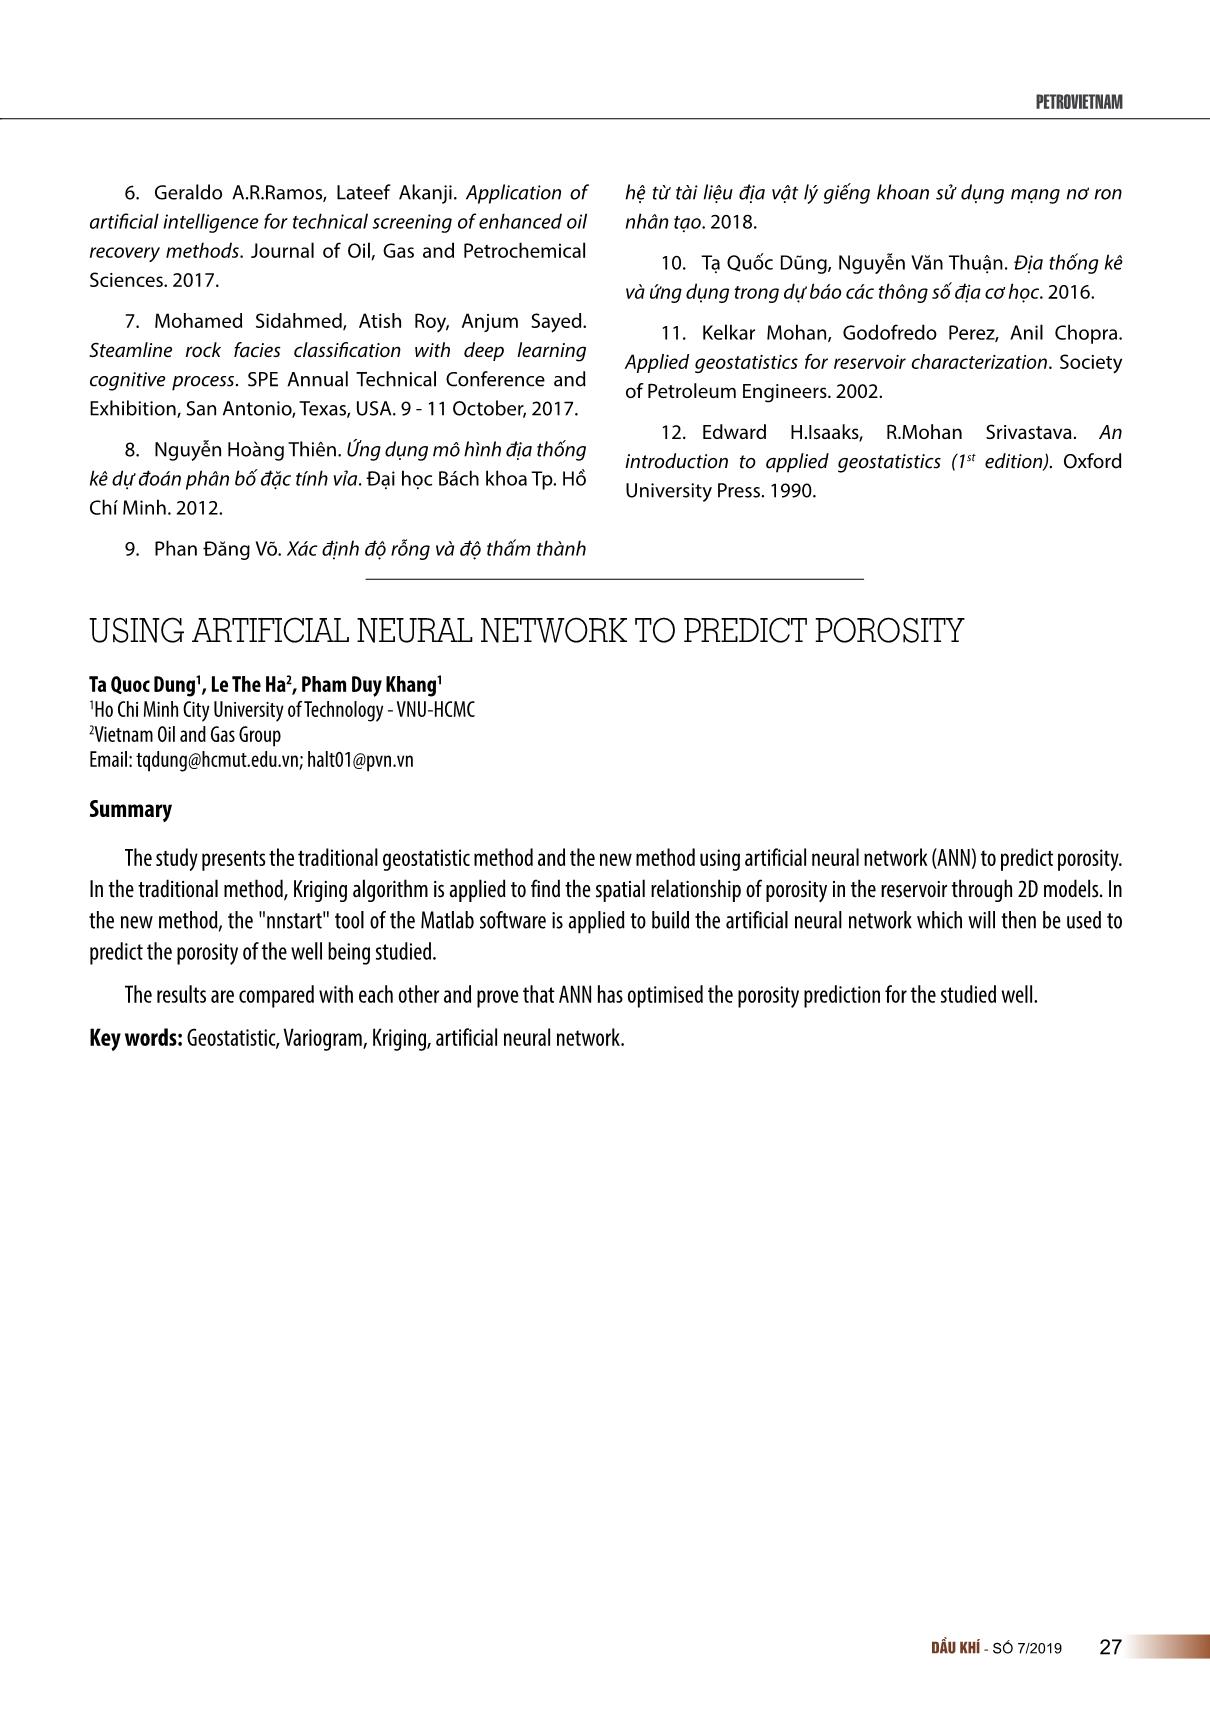 Ứng dụng mạng neuron nhân tạo (ANN) trong dự báo độ rỗng trang 10